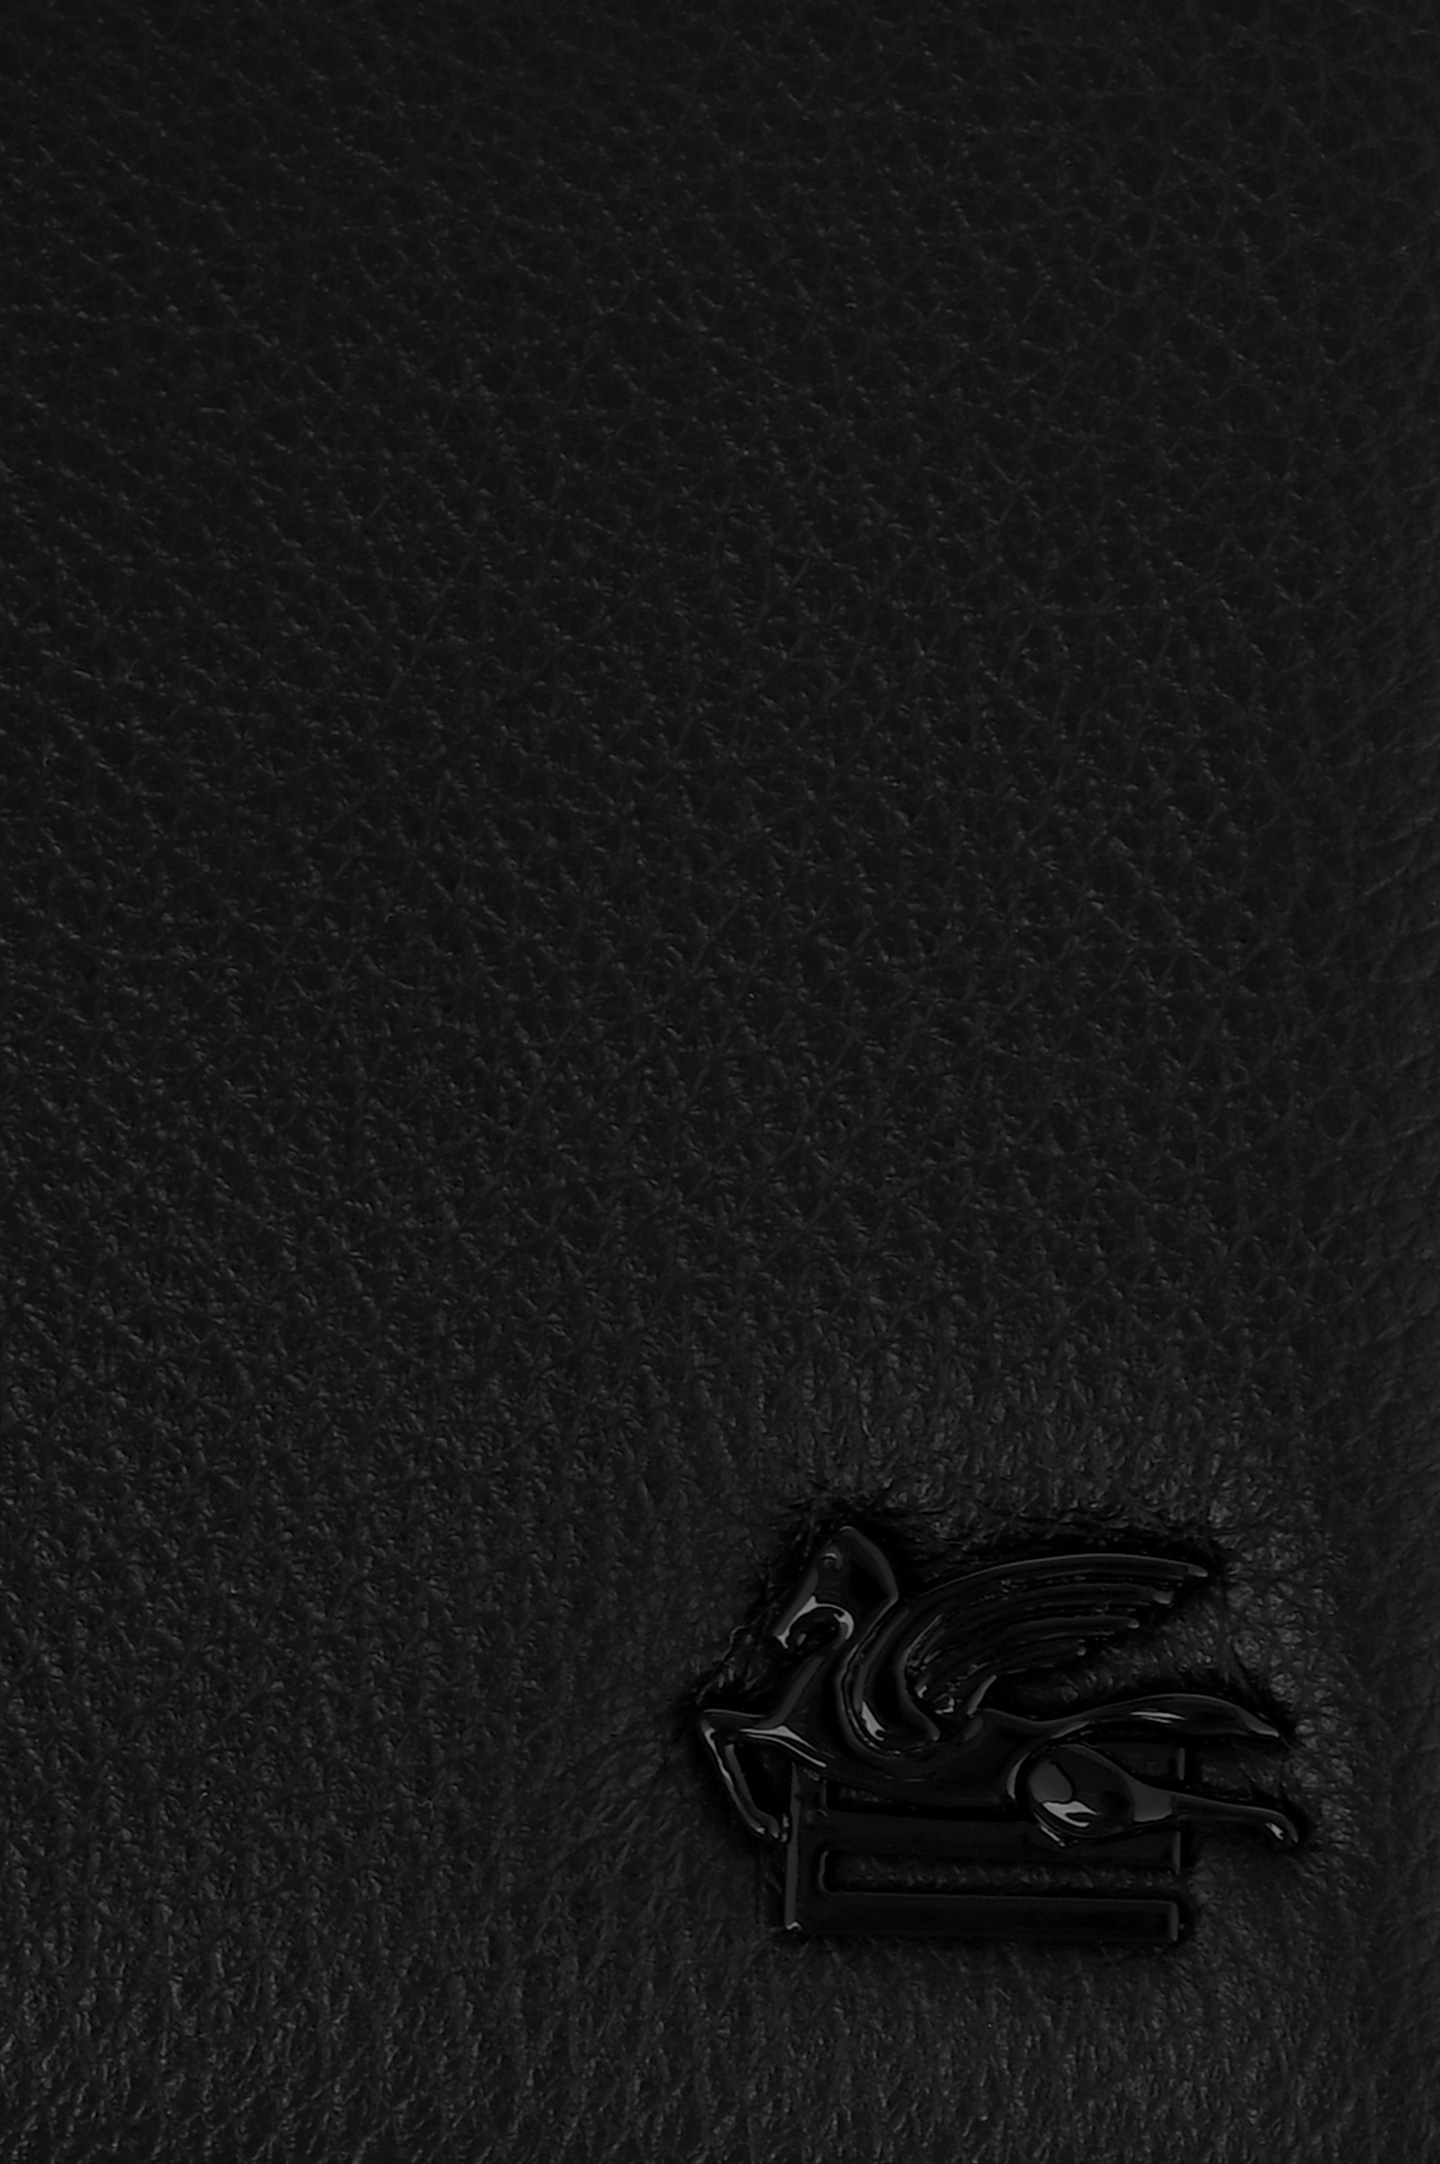 Кожаный кошелек ETRO MP2D0003 AU015, цвет: Черный, Мужской